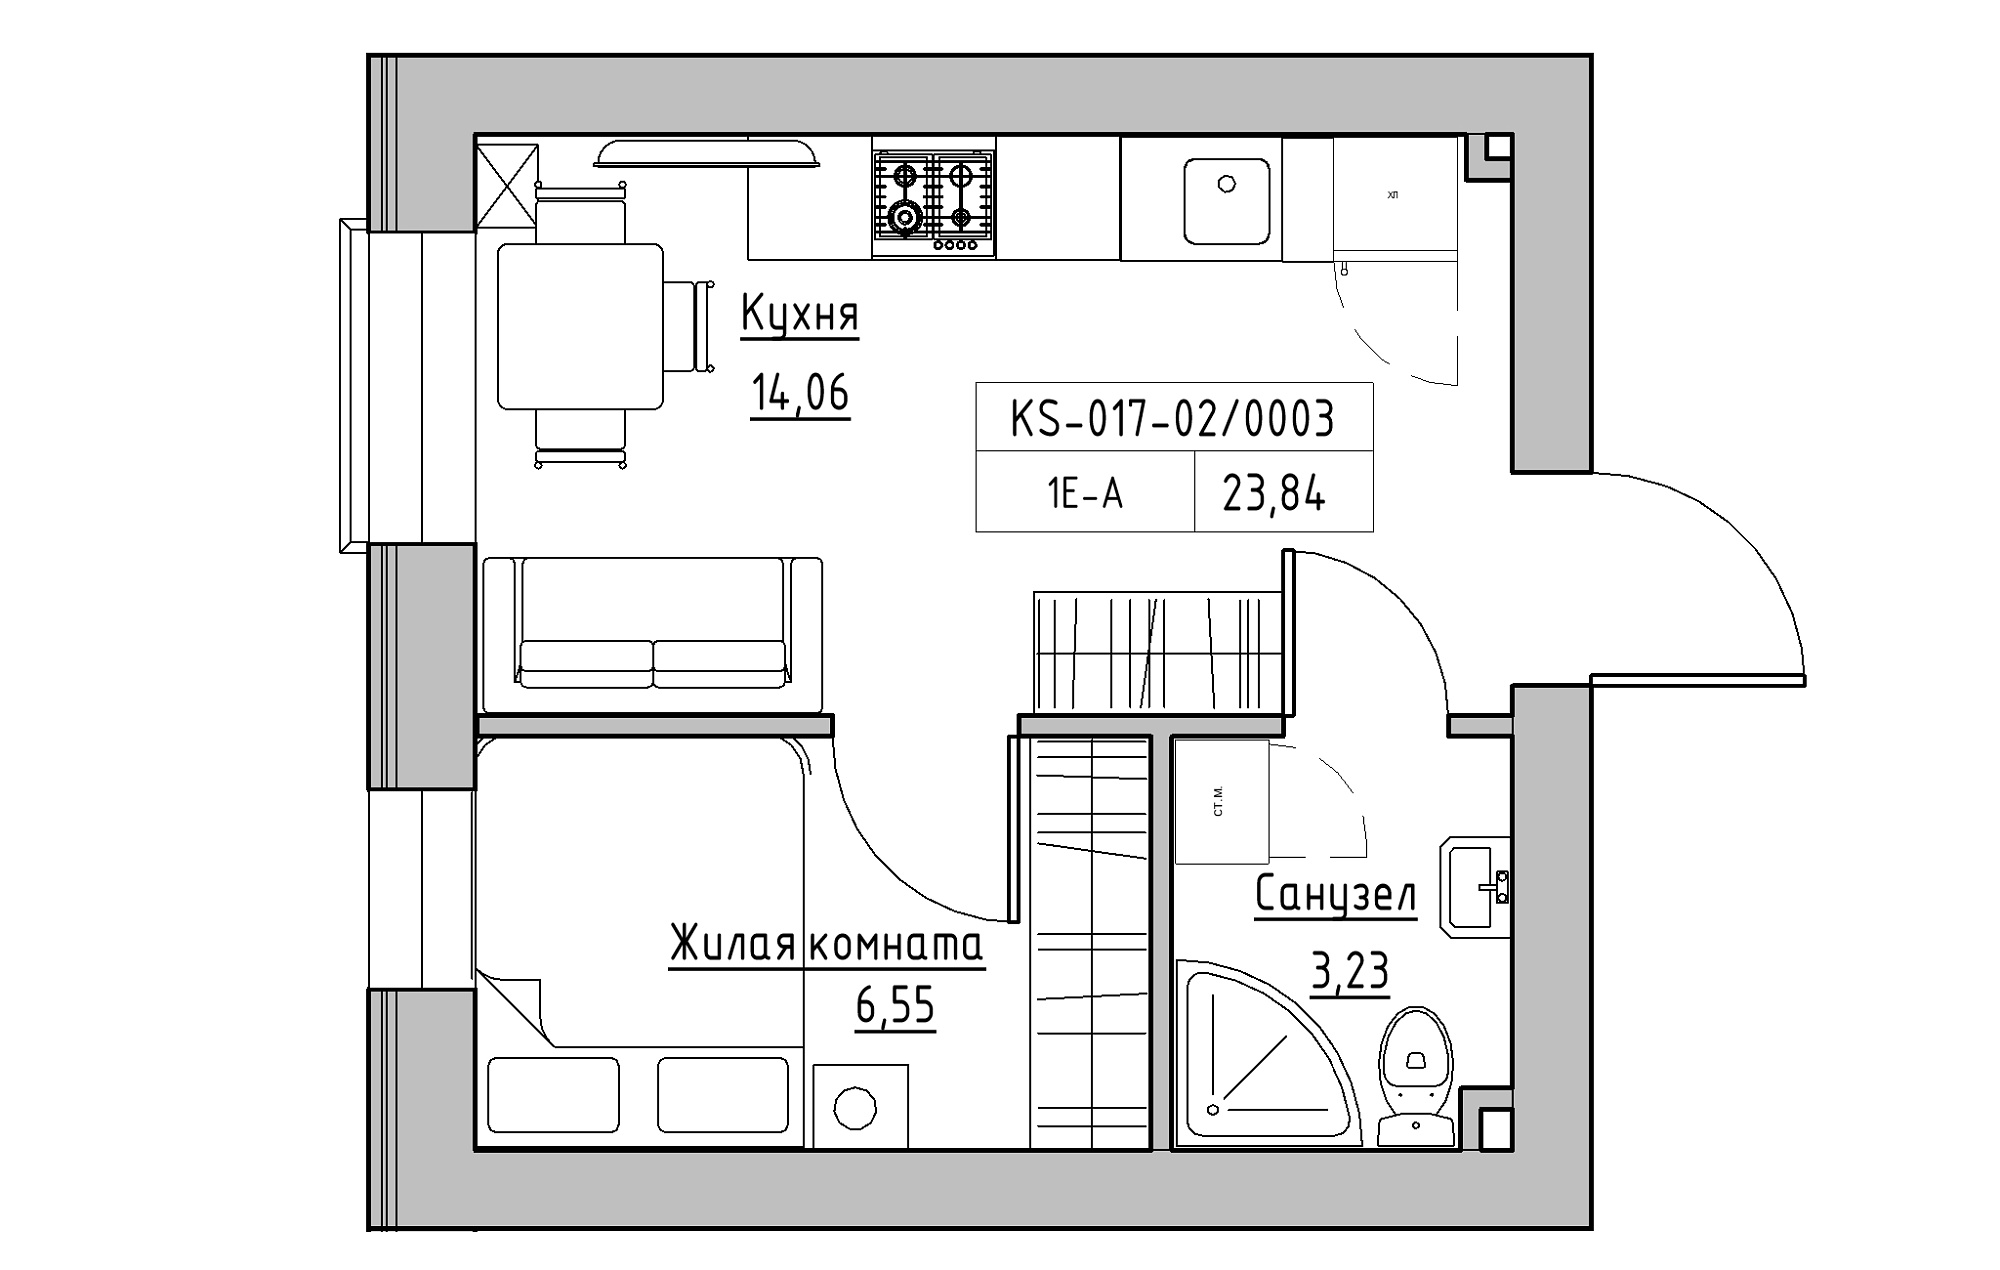 Планировка 1-к квартира площей 23.84м2, KS-017-02/0003.